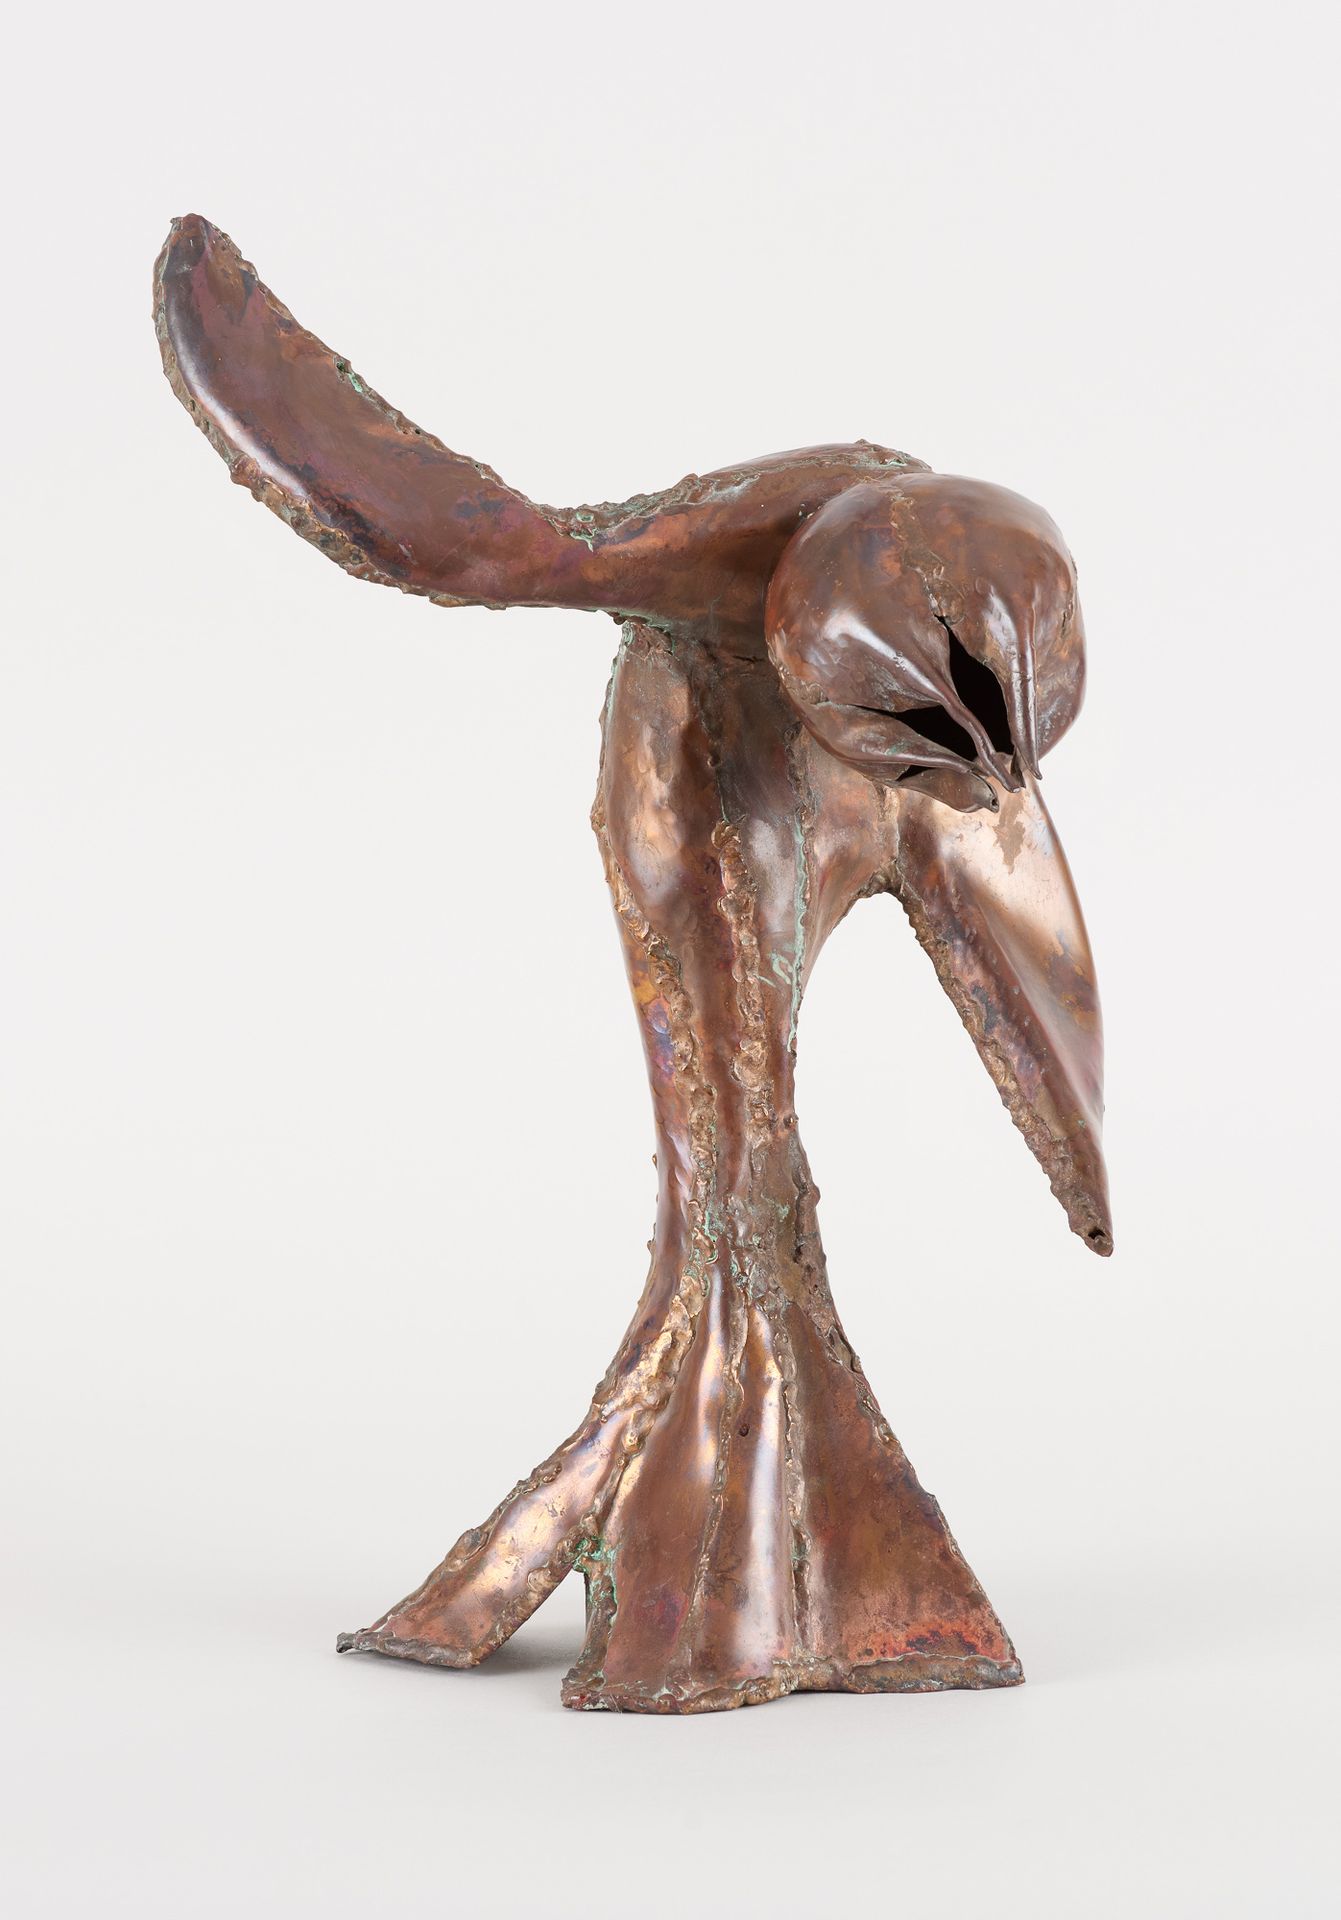 Reinhoud d'HAESE École belge (1928-2007) Metal sculpture: "Des nèfles".

By Rein&hellip;